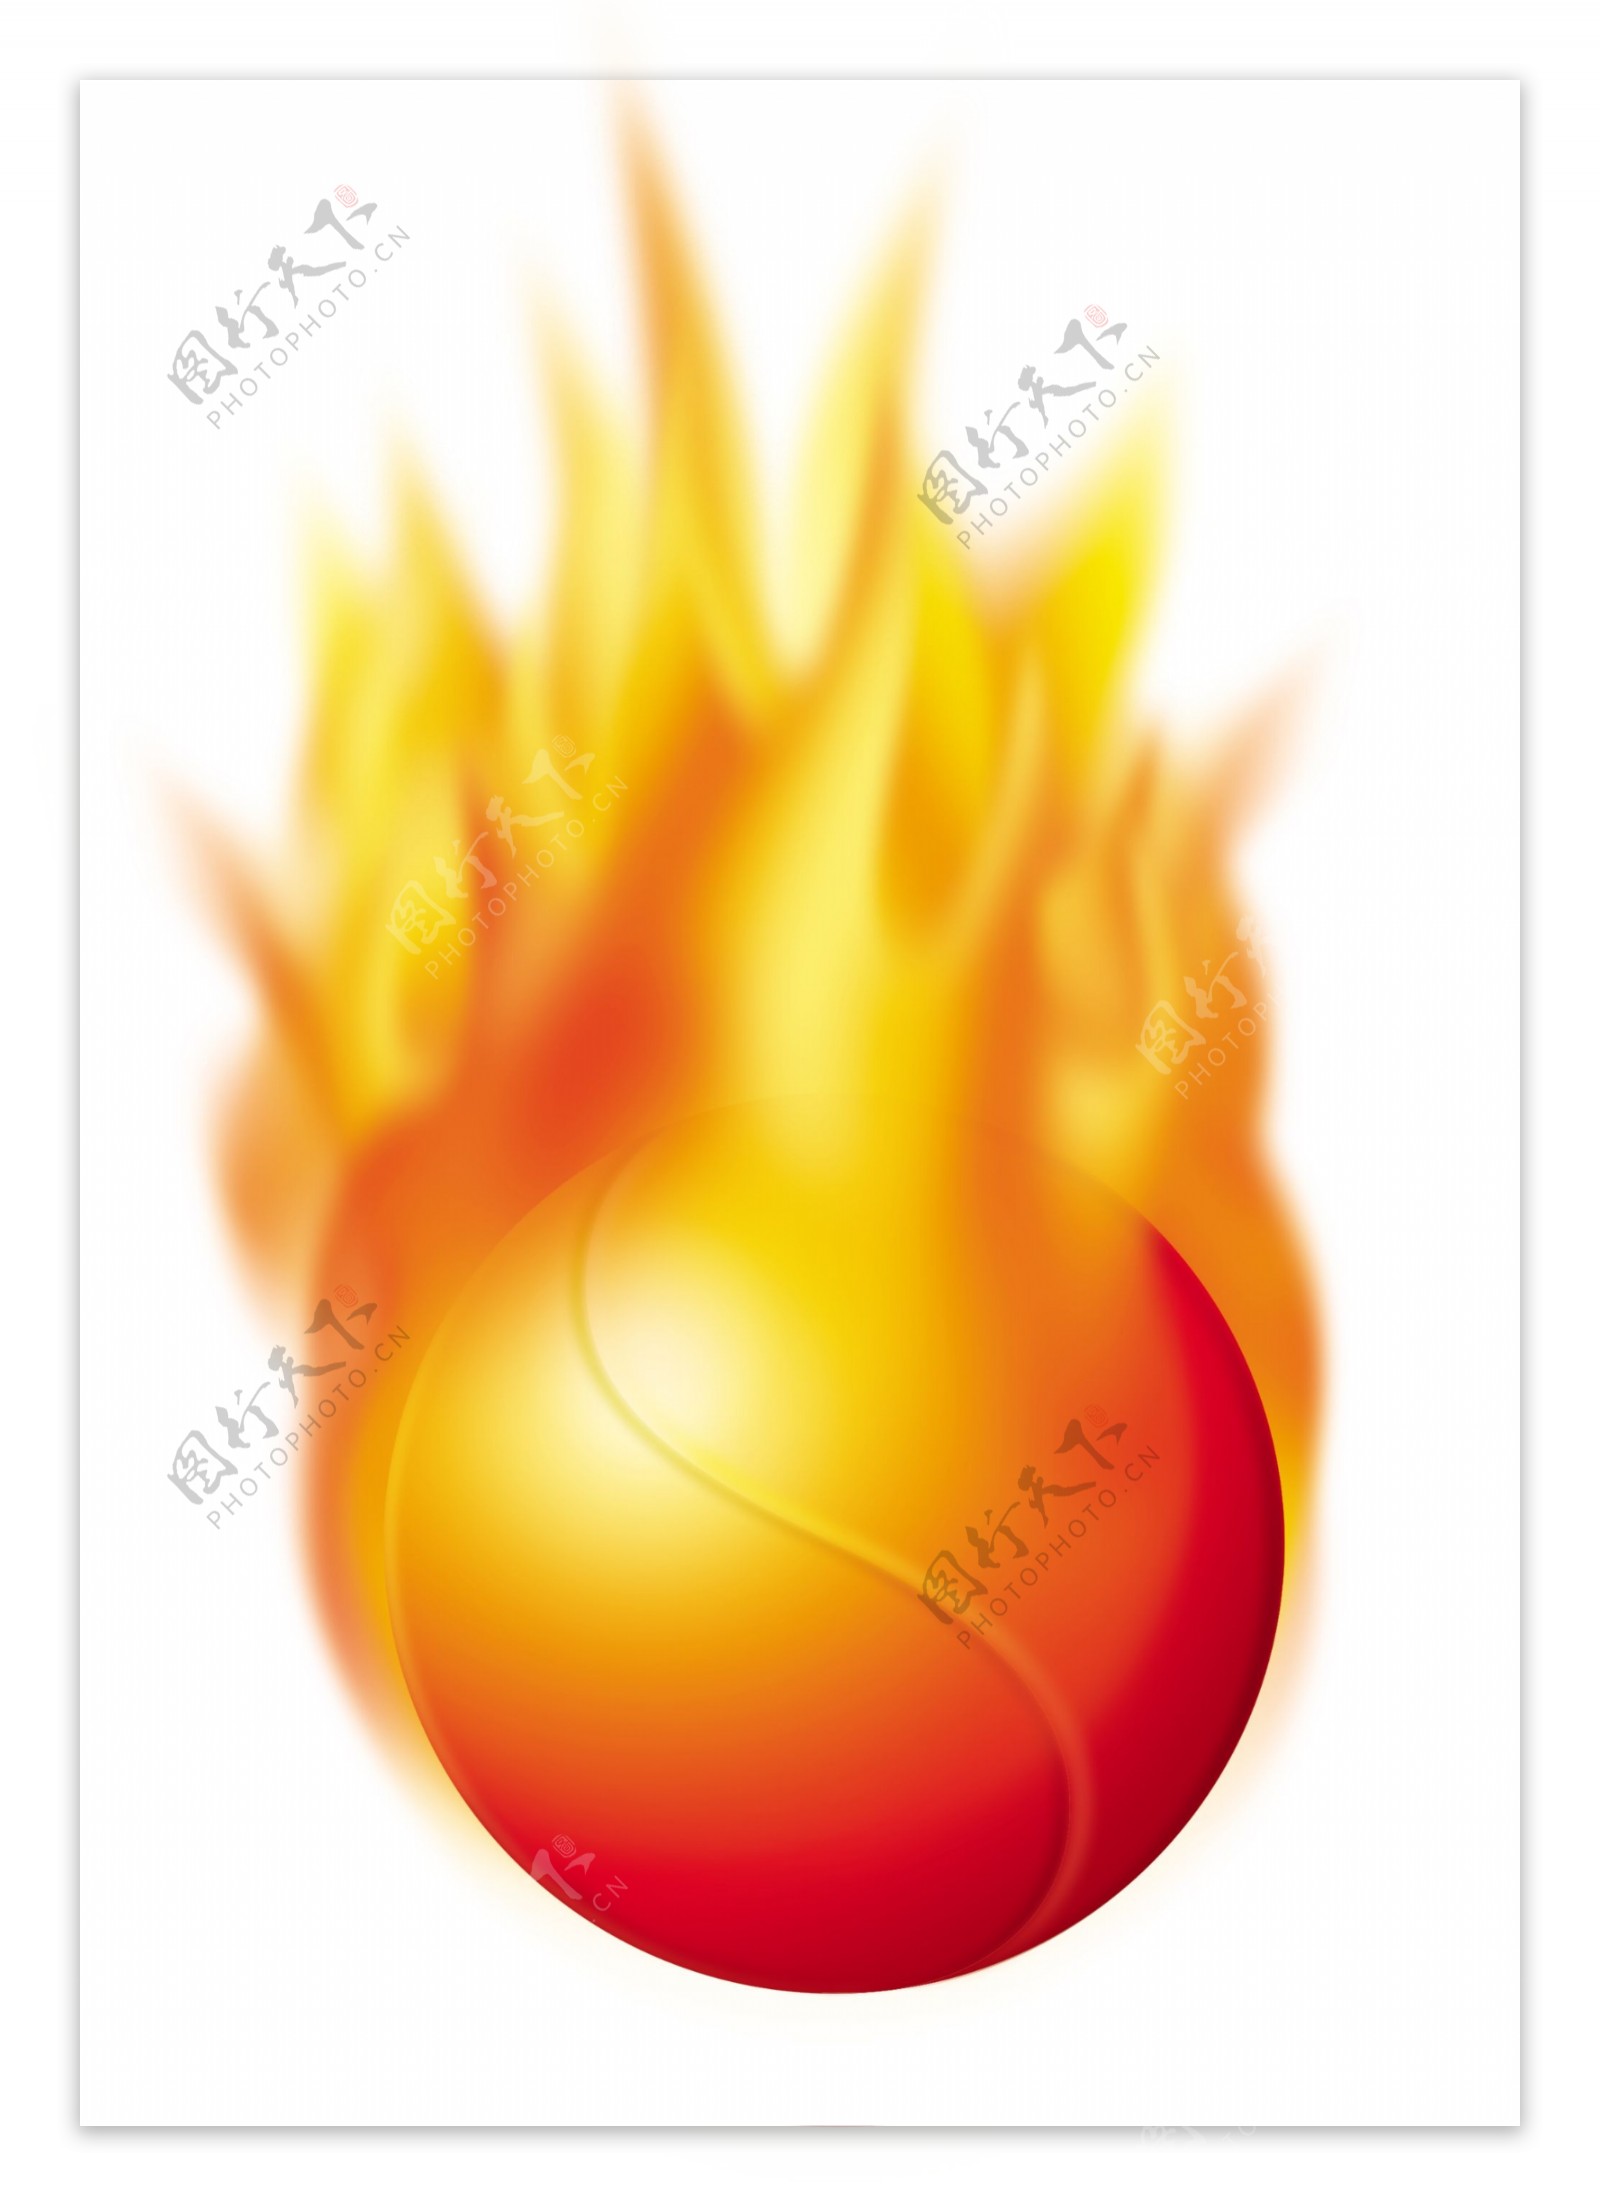 PSD燃烧的火球